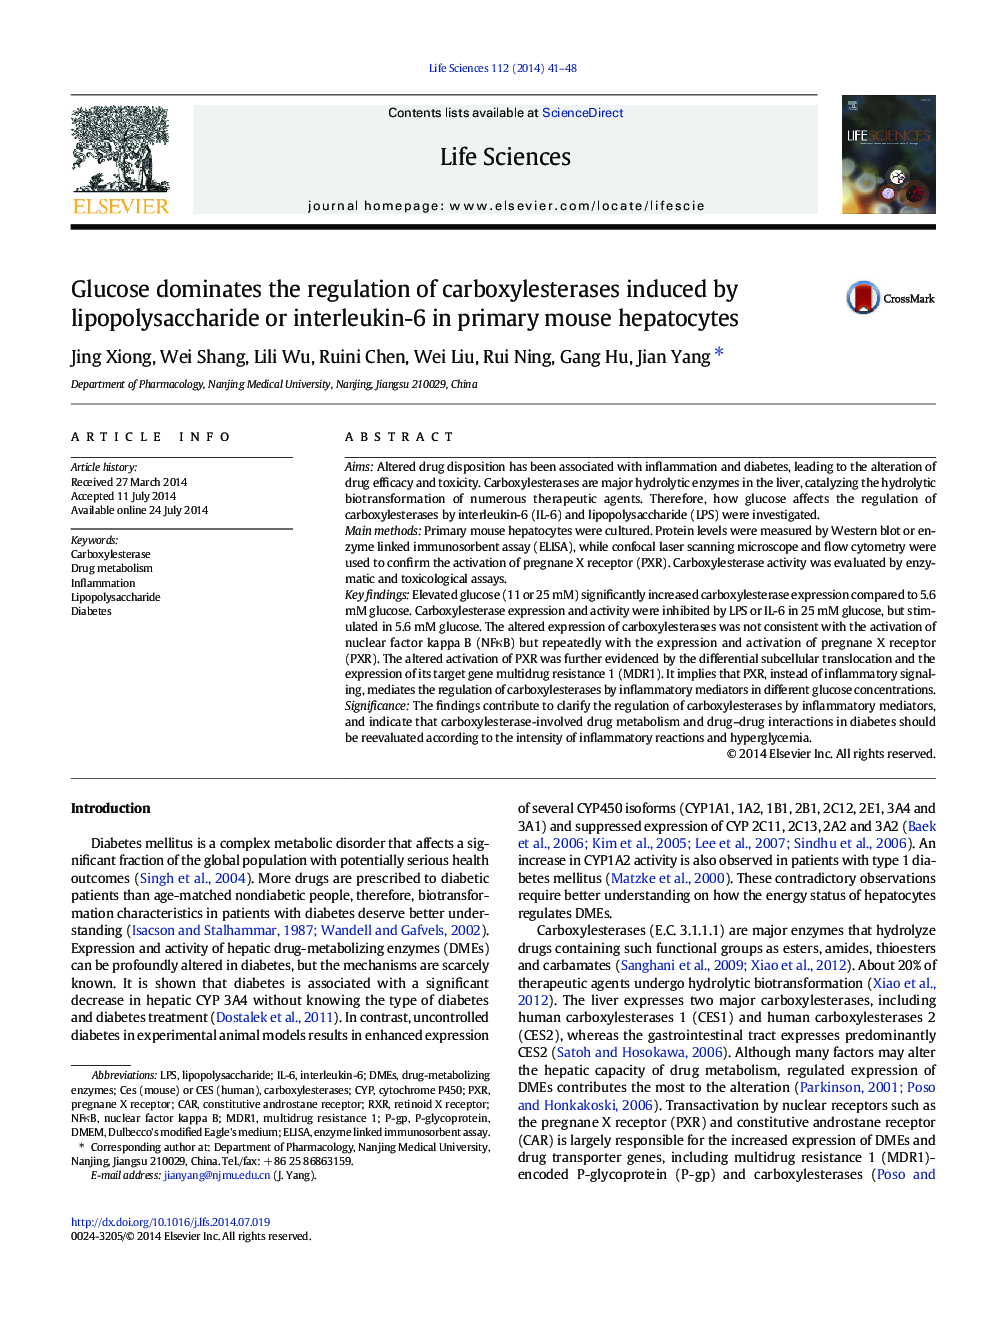 گلوکز تنظیم مقررات کربوکسی سسترااز ناشی از لیپوپلی ساکارید یا اینترلوکین -6 در هپاتوسیت های موش اولیه 